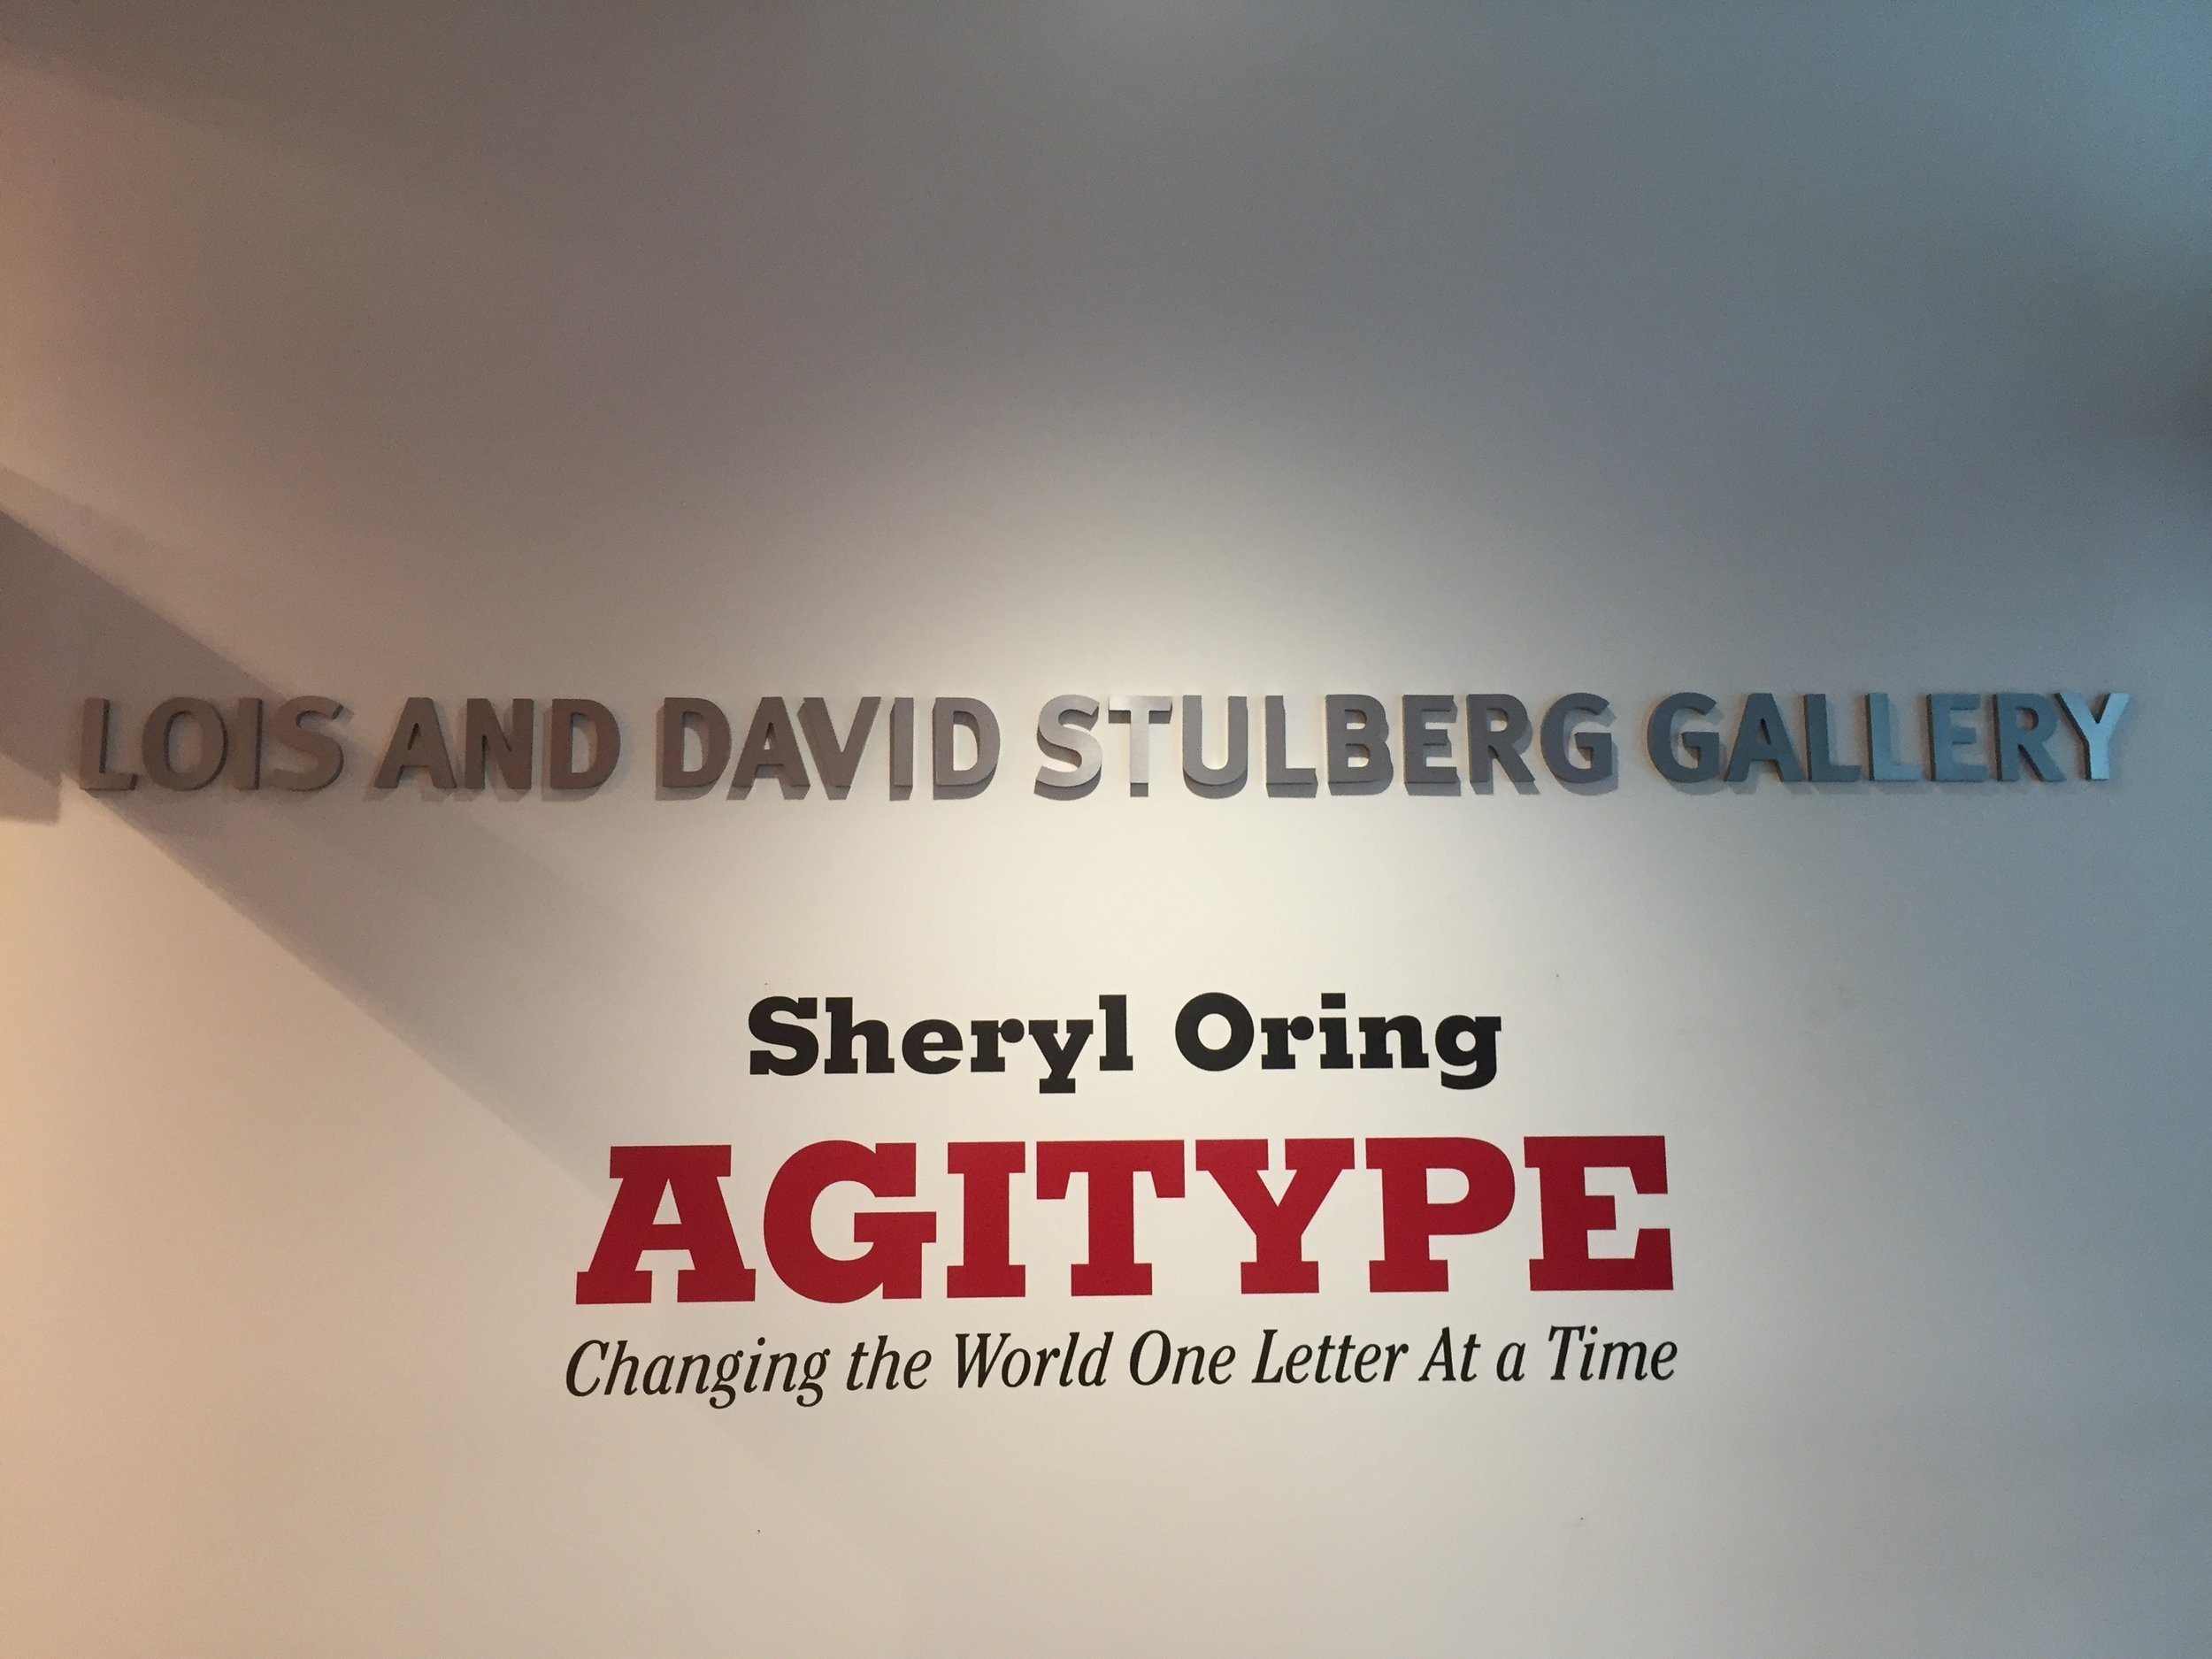 Agitype exhibition